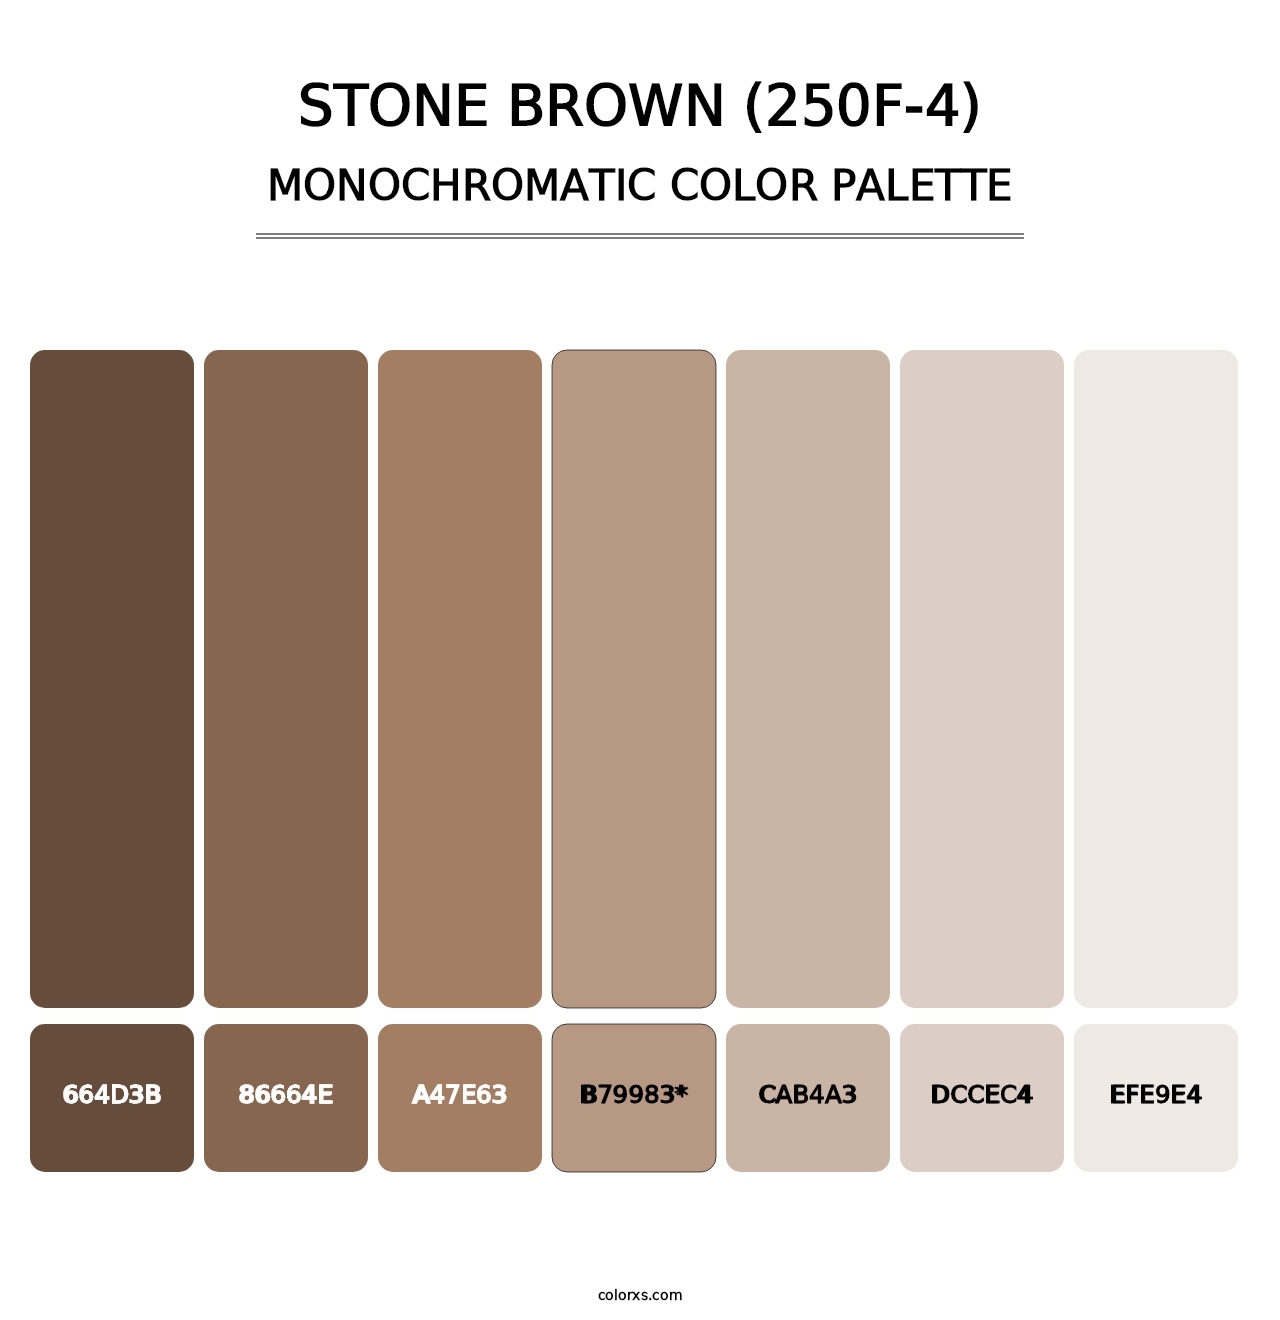 Stone Brown (250F-4) - Monochromatic Color Palette